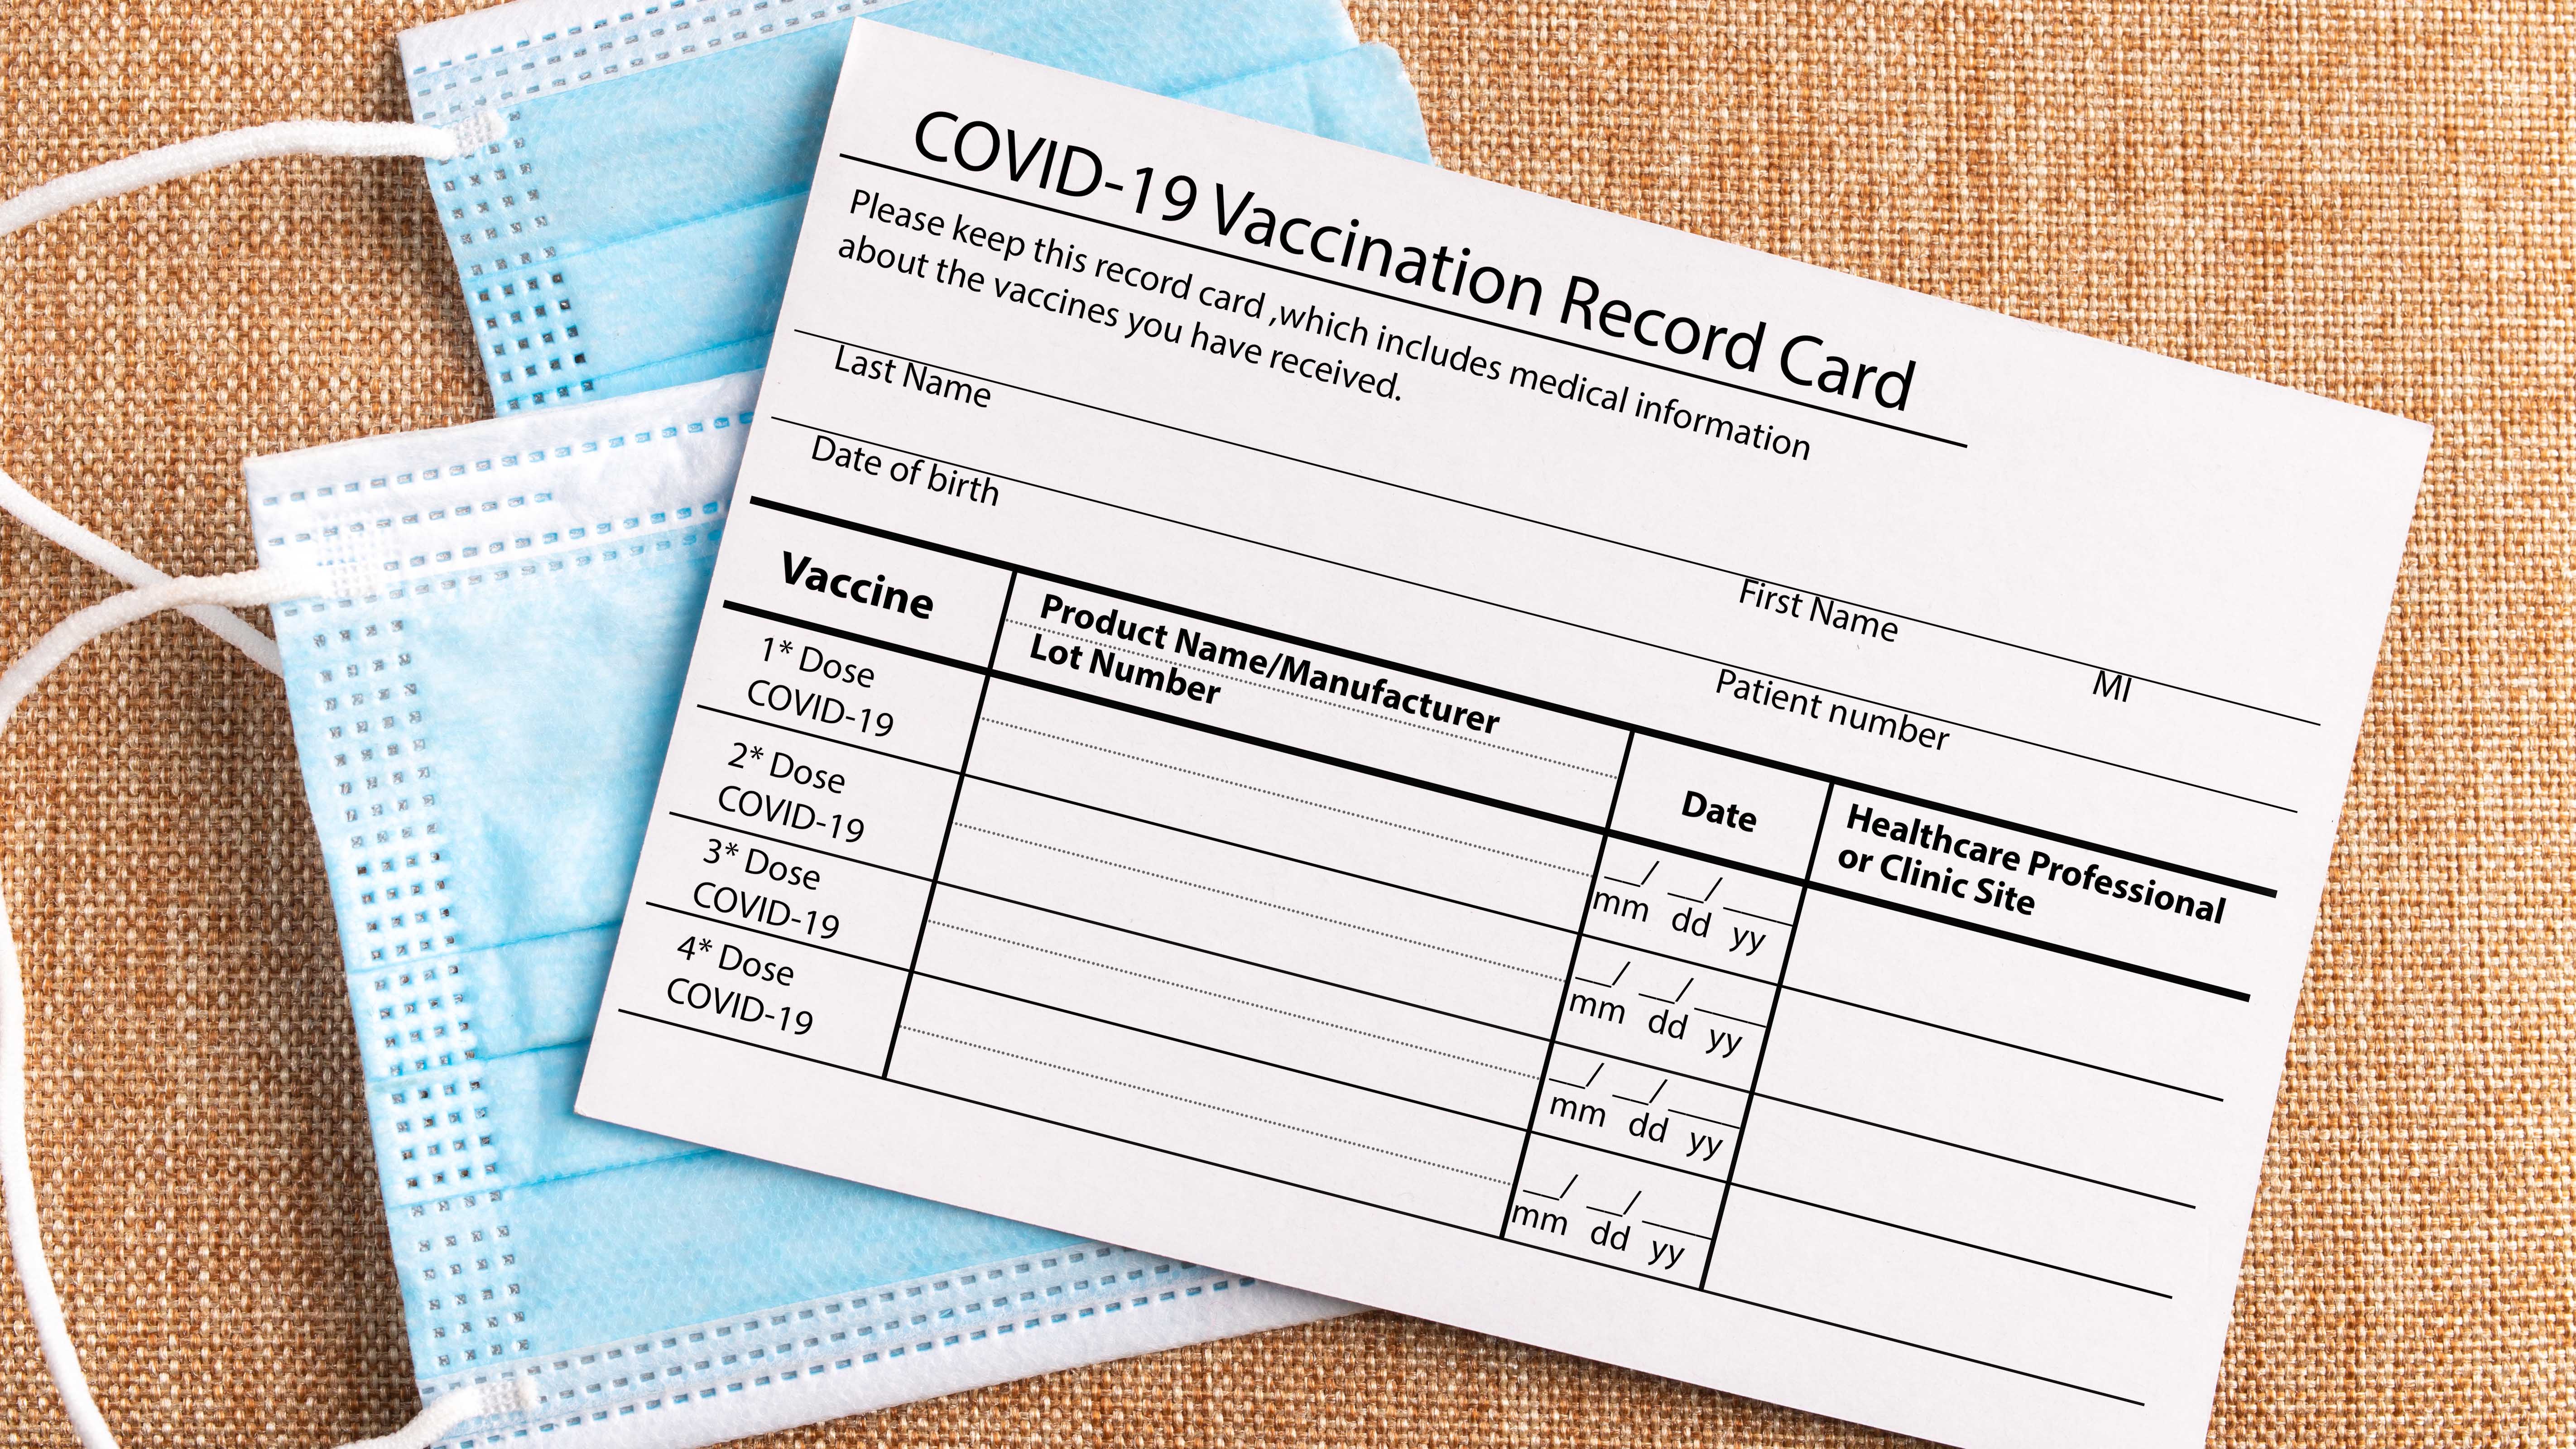 LA Wallet app will let you have digital copy of COVID-19 vaccine card